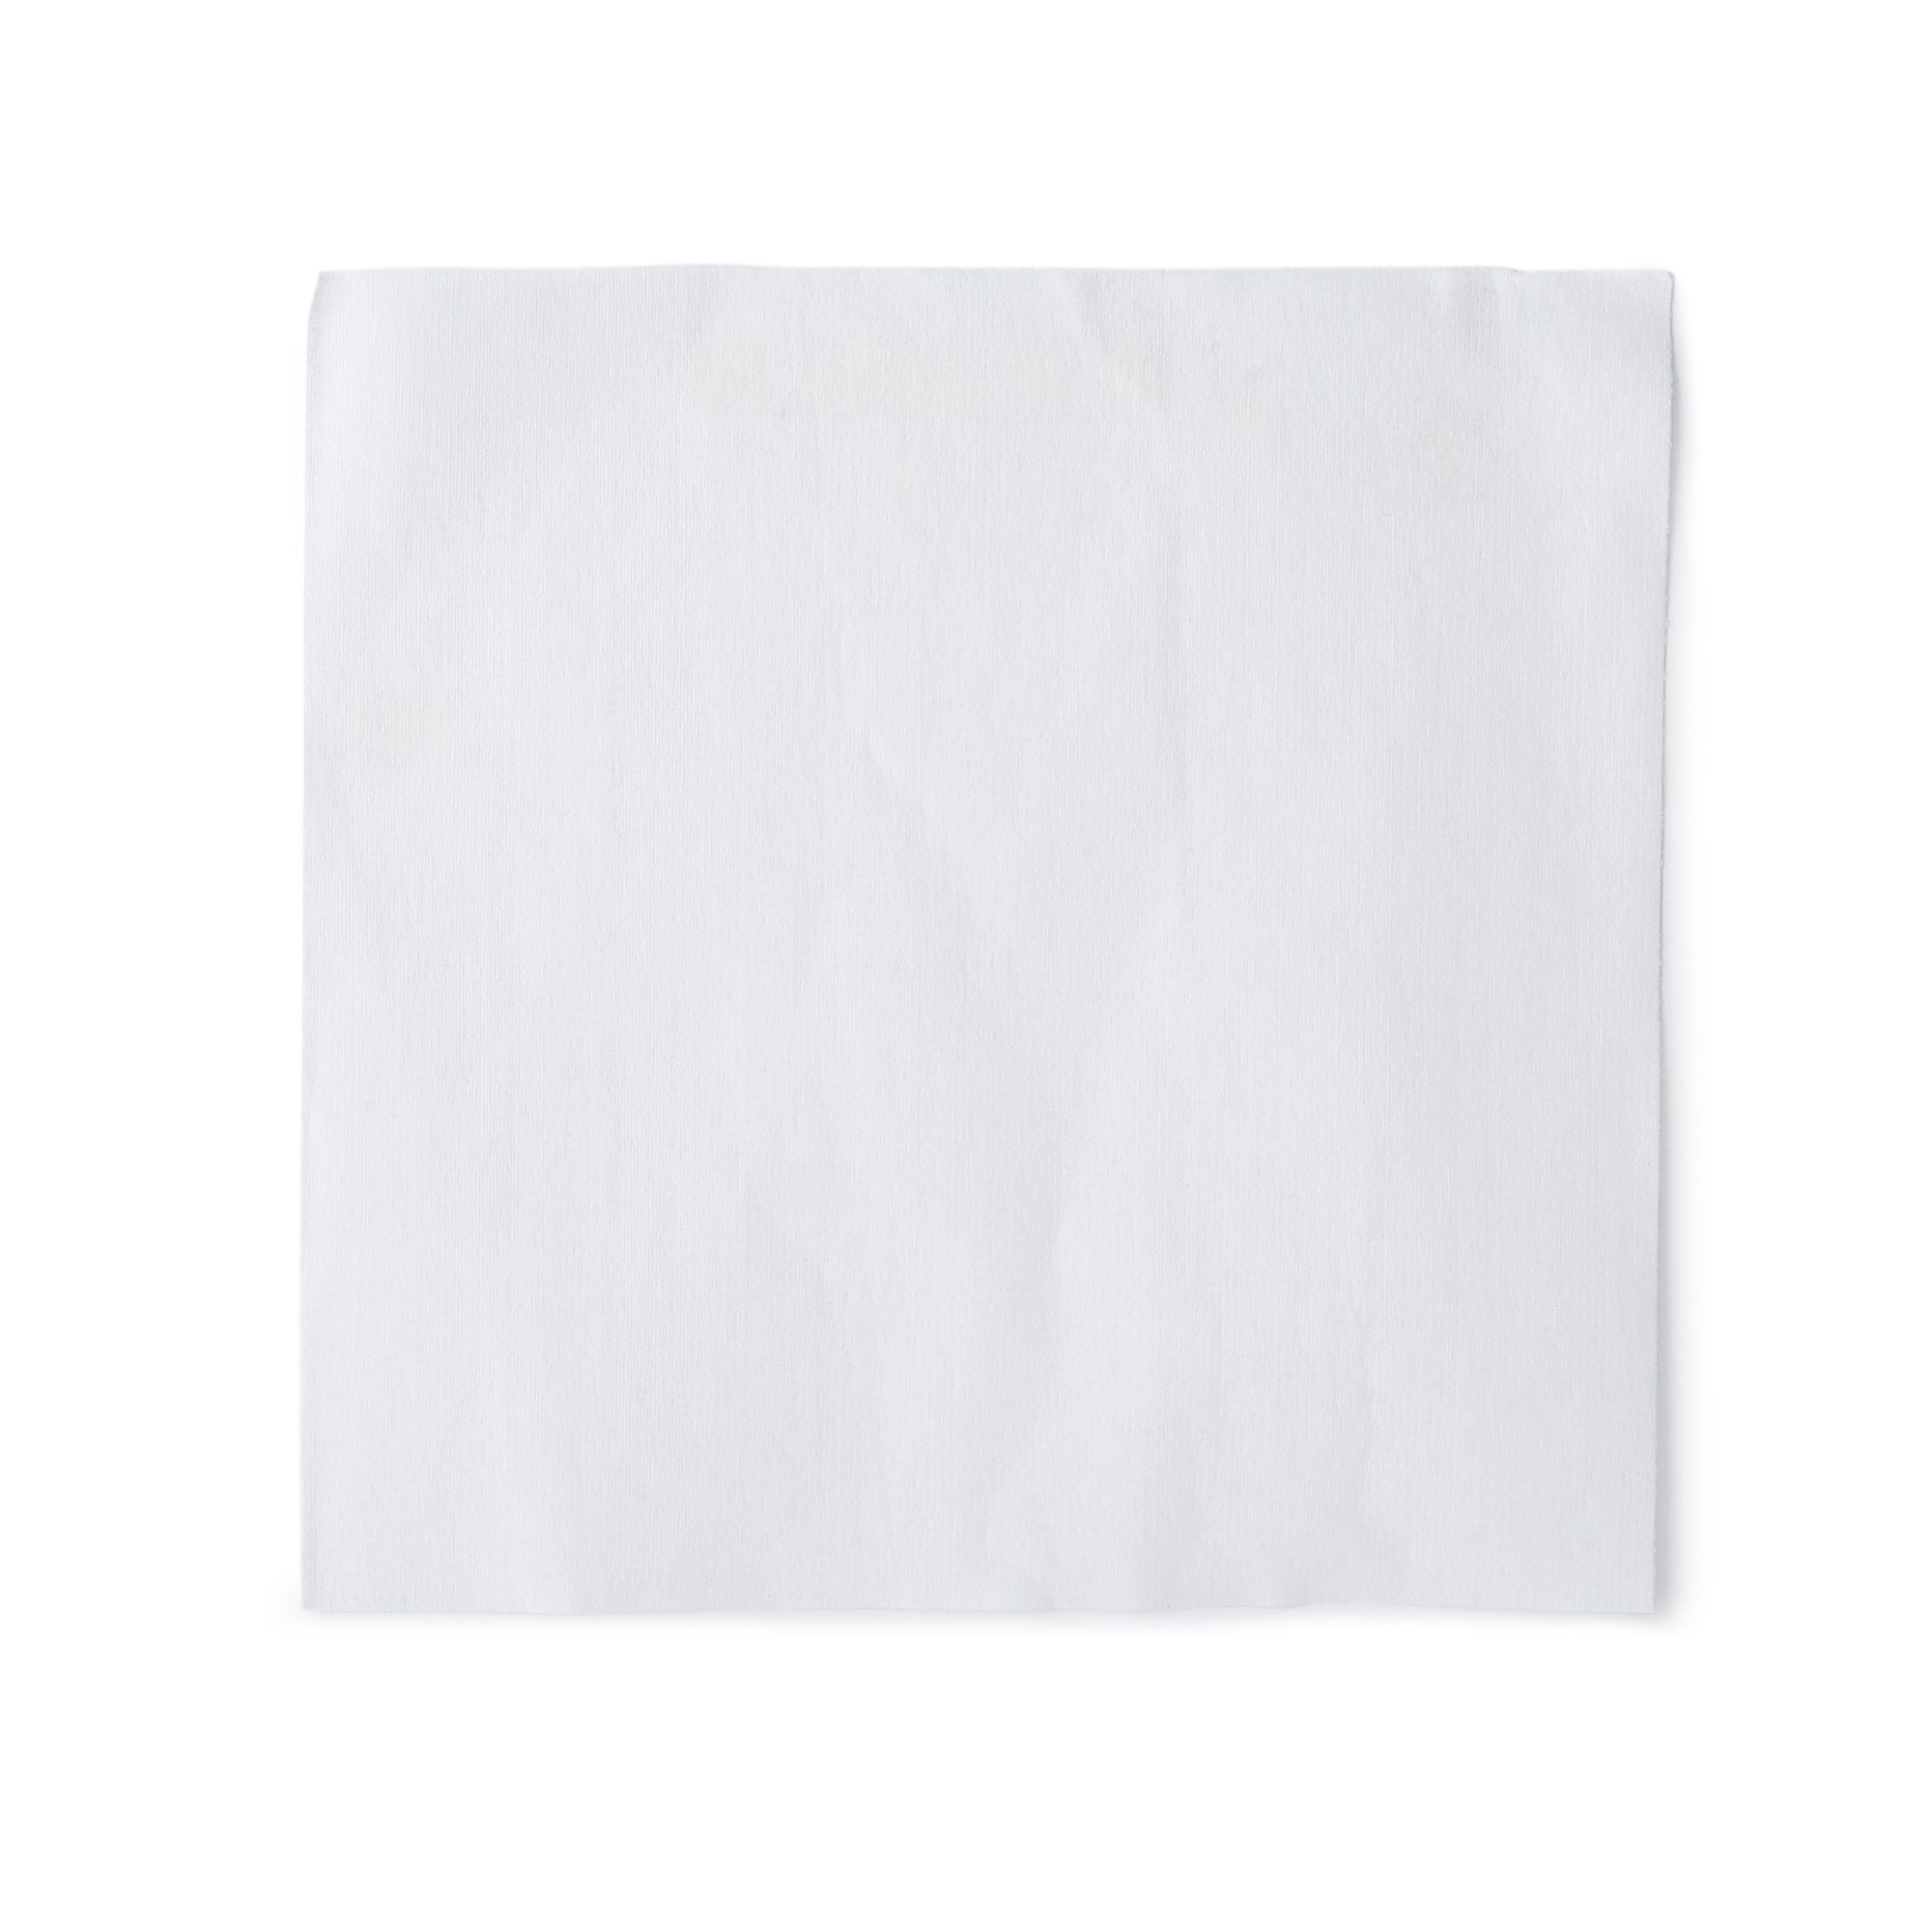 Task Wipe Health Care Logistics® White NonSterile 9 X 9 Inch Disposable